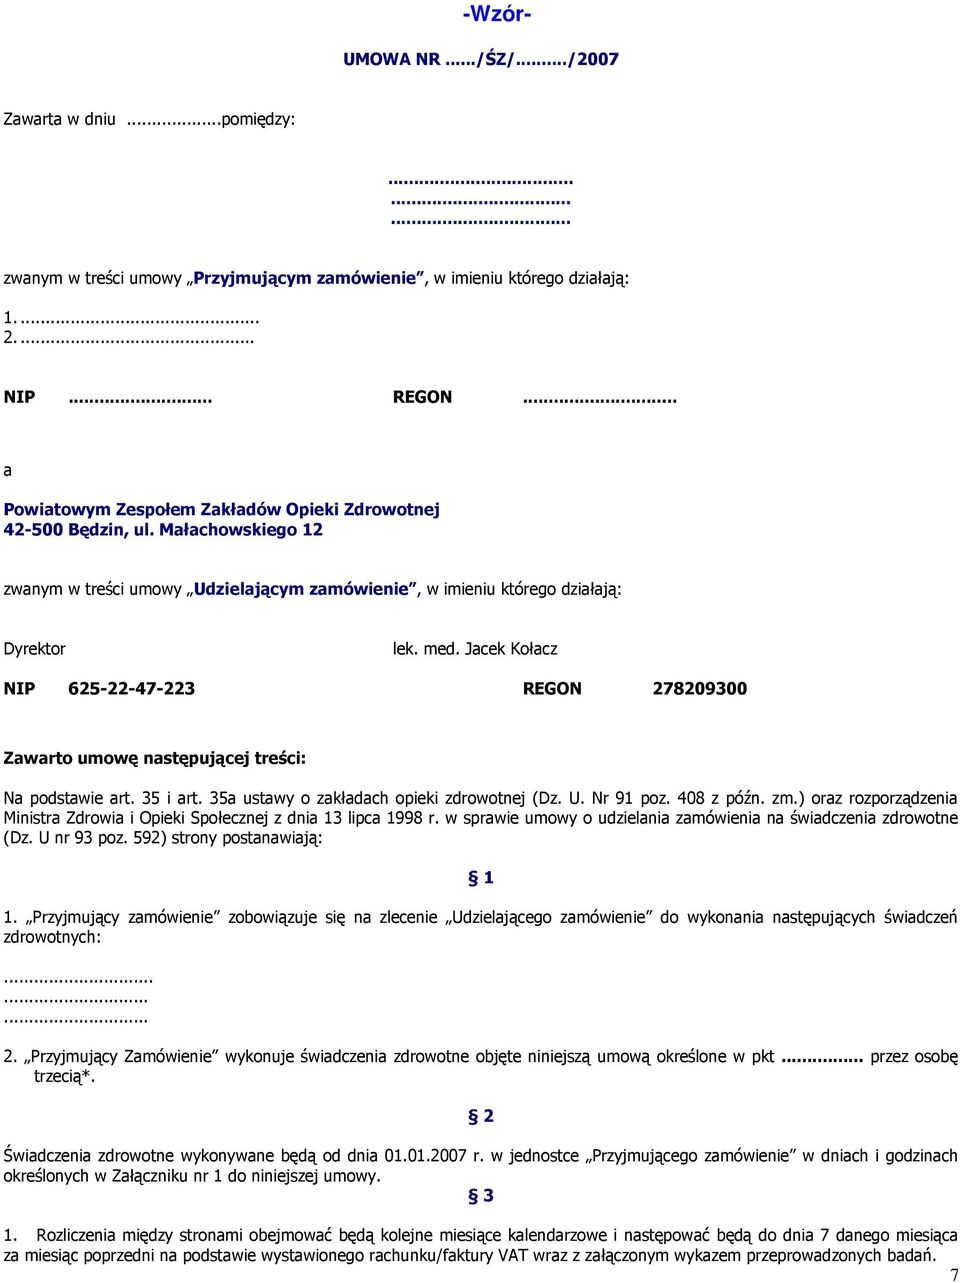 Jacek Kołacz NIP 625-22-47-223 REGON 278209300 Zawarto umowę następującej treści: Na podstawie art. 35 i art. 35a ustawy o zakładach opieki zdrowotnej (Dz. U. Nr 91 poz. 408 z późn. zm.